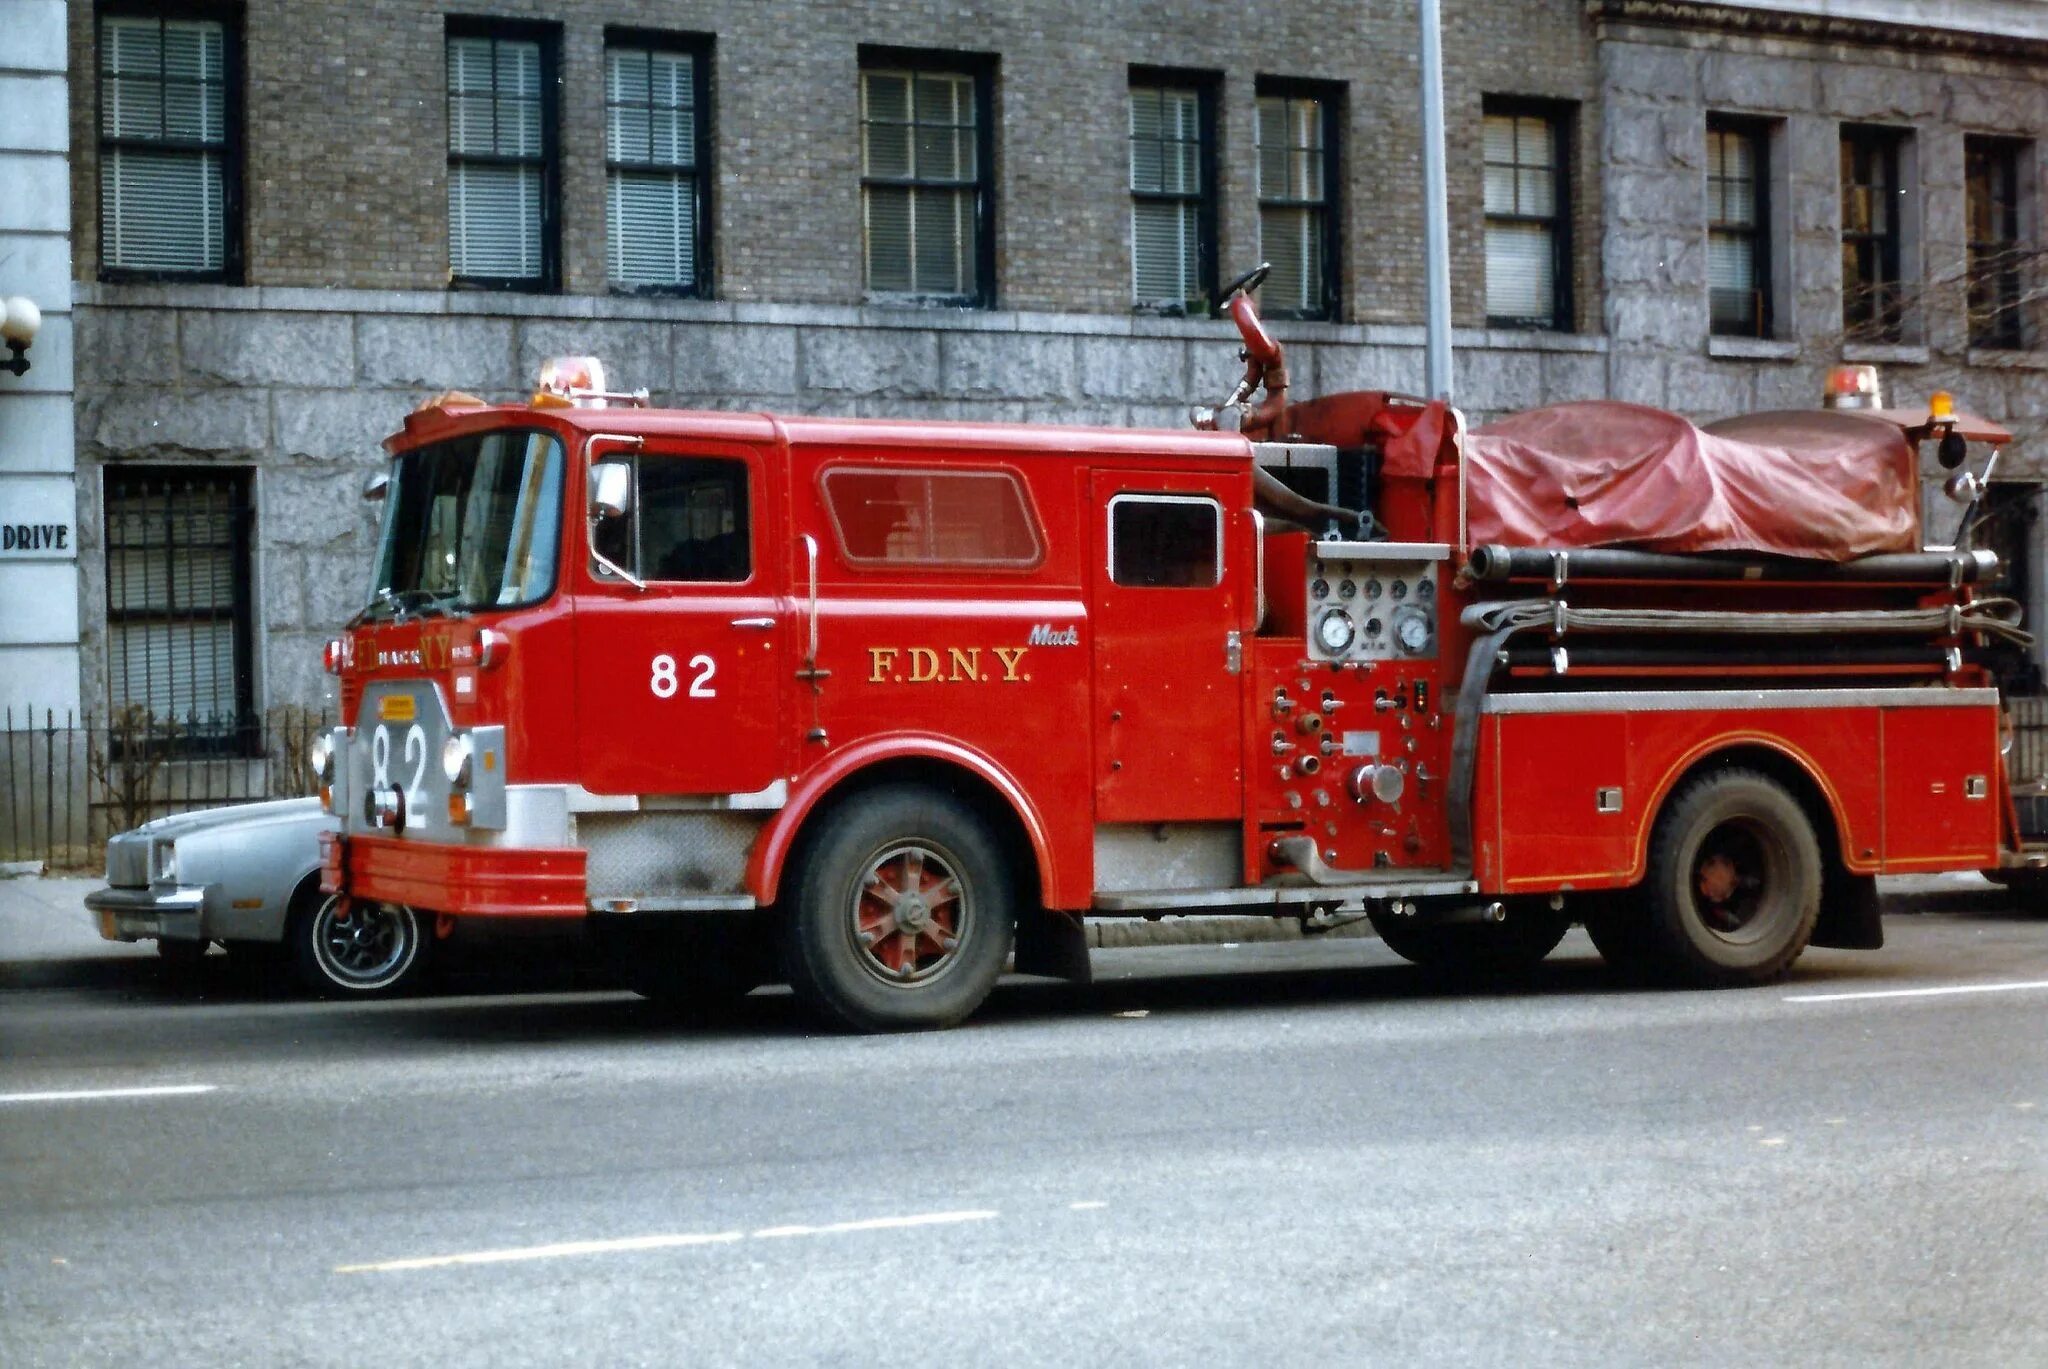 Посадка пожарных в автомобиль. Fire engine FDNY. Пожарный грузовик Mack. Mack FDNY 82. Пожарные FDNY.